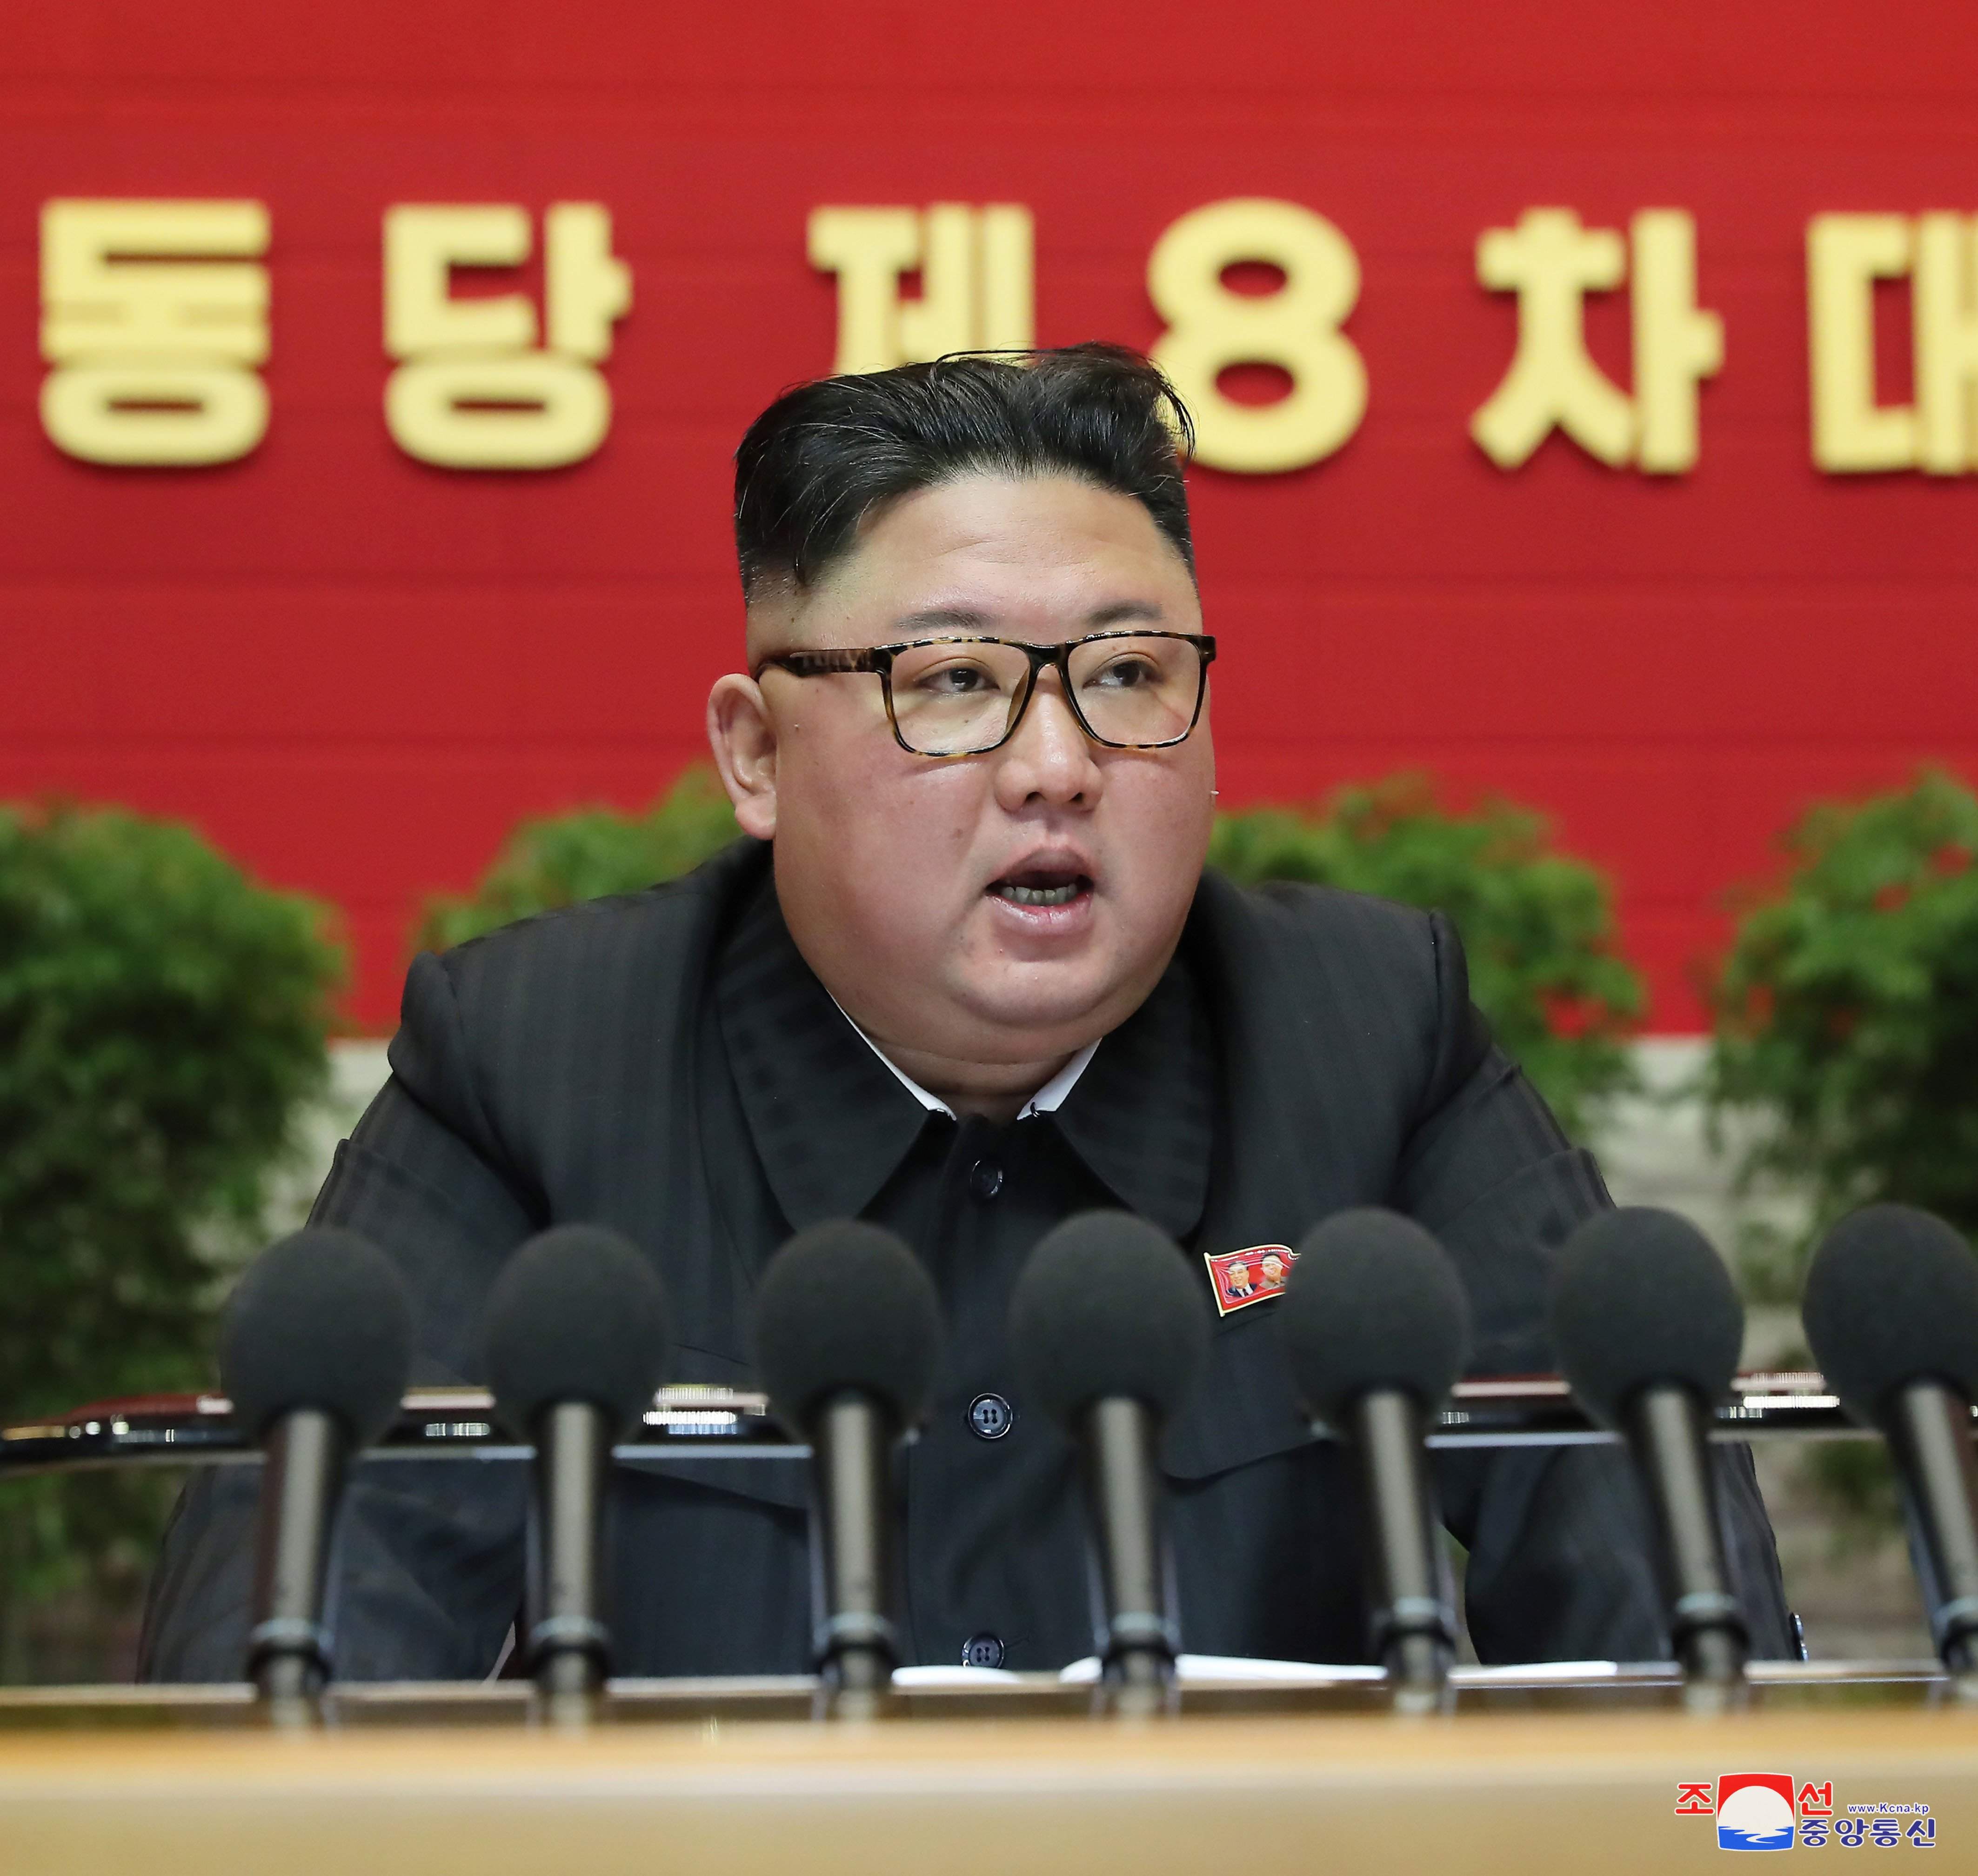 Corea del Norte abandona el sueño de la reunificación: Corea del Sur pasa a ser el enemigo número uno